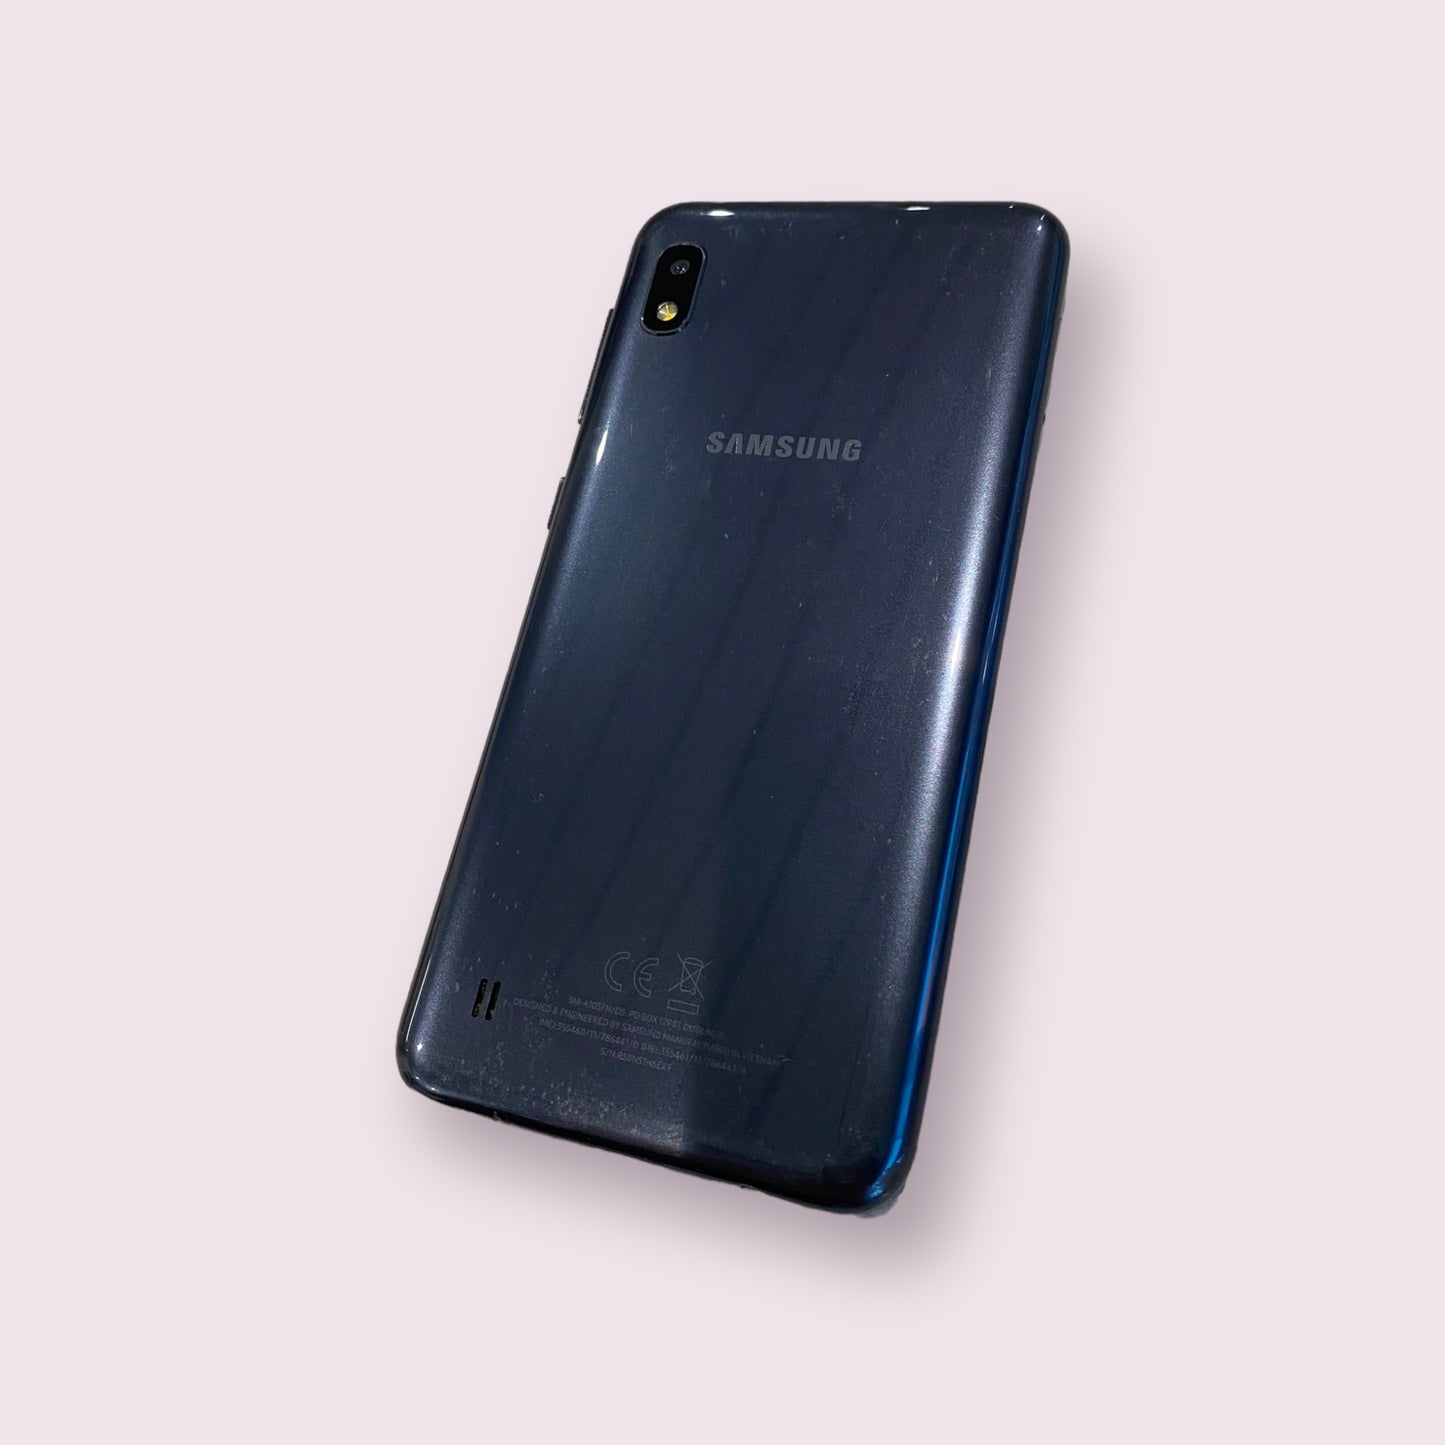 Samsung Galaxy A10 SM-A105FN/DS 32GB blue Dual Sim smartphone - Unlocked - Grade C